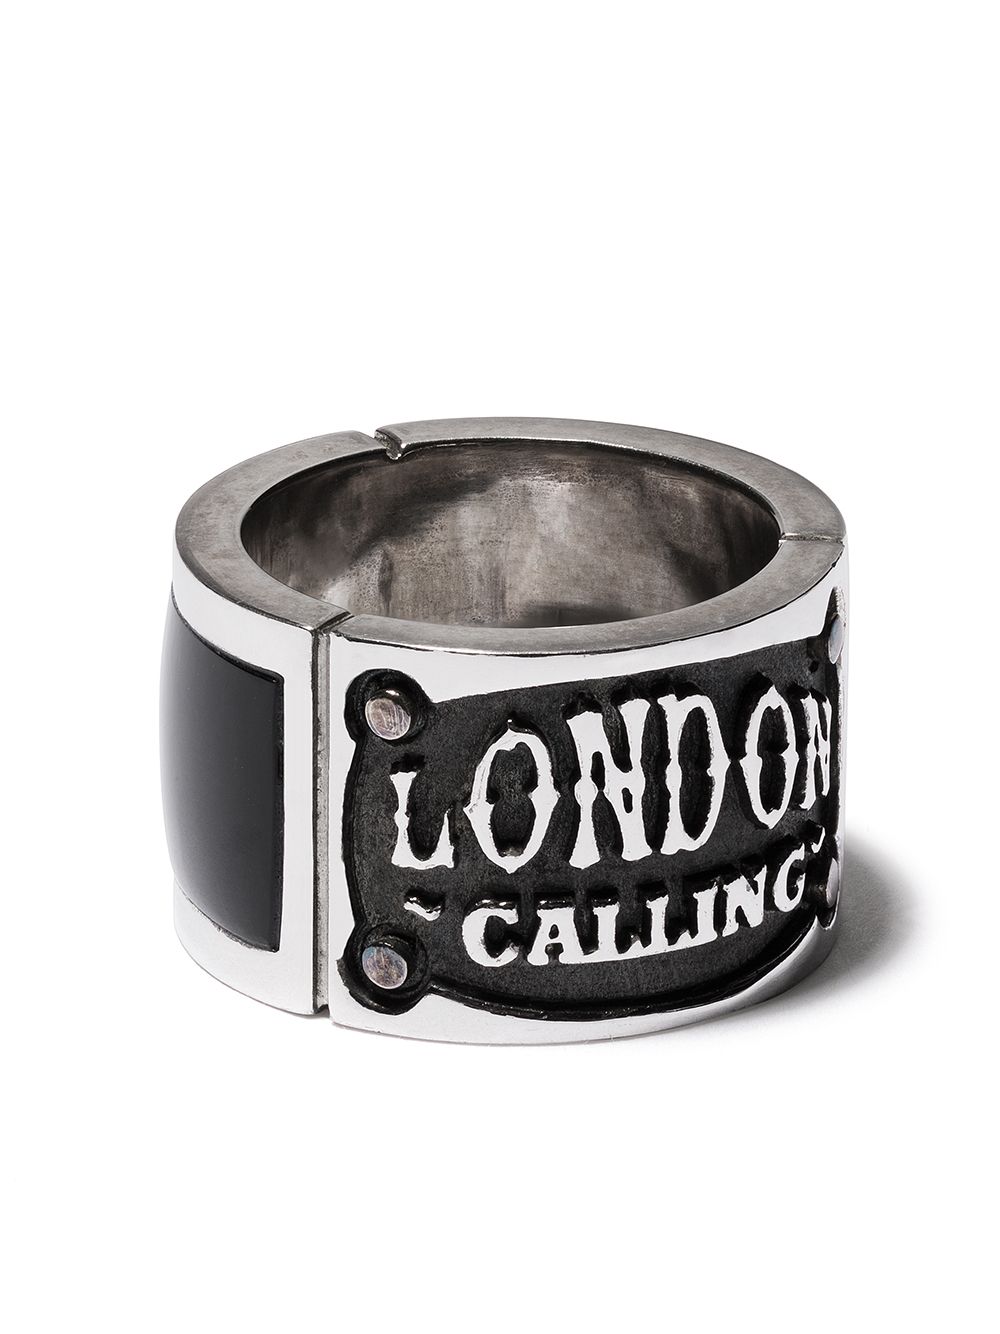 фото Stephen webster кольцо london calling с ониксом и эмалью